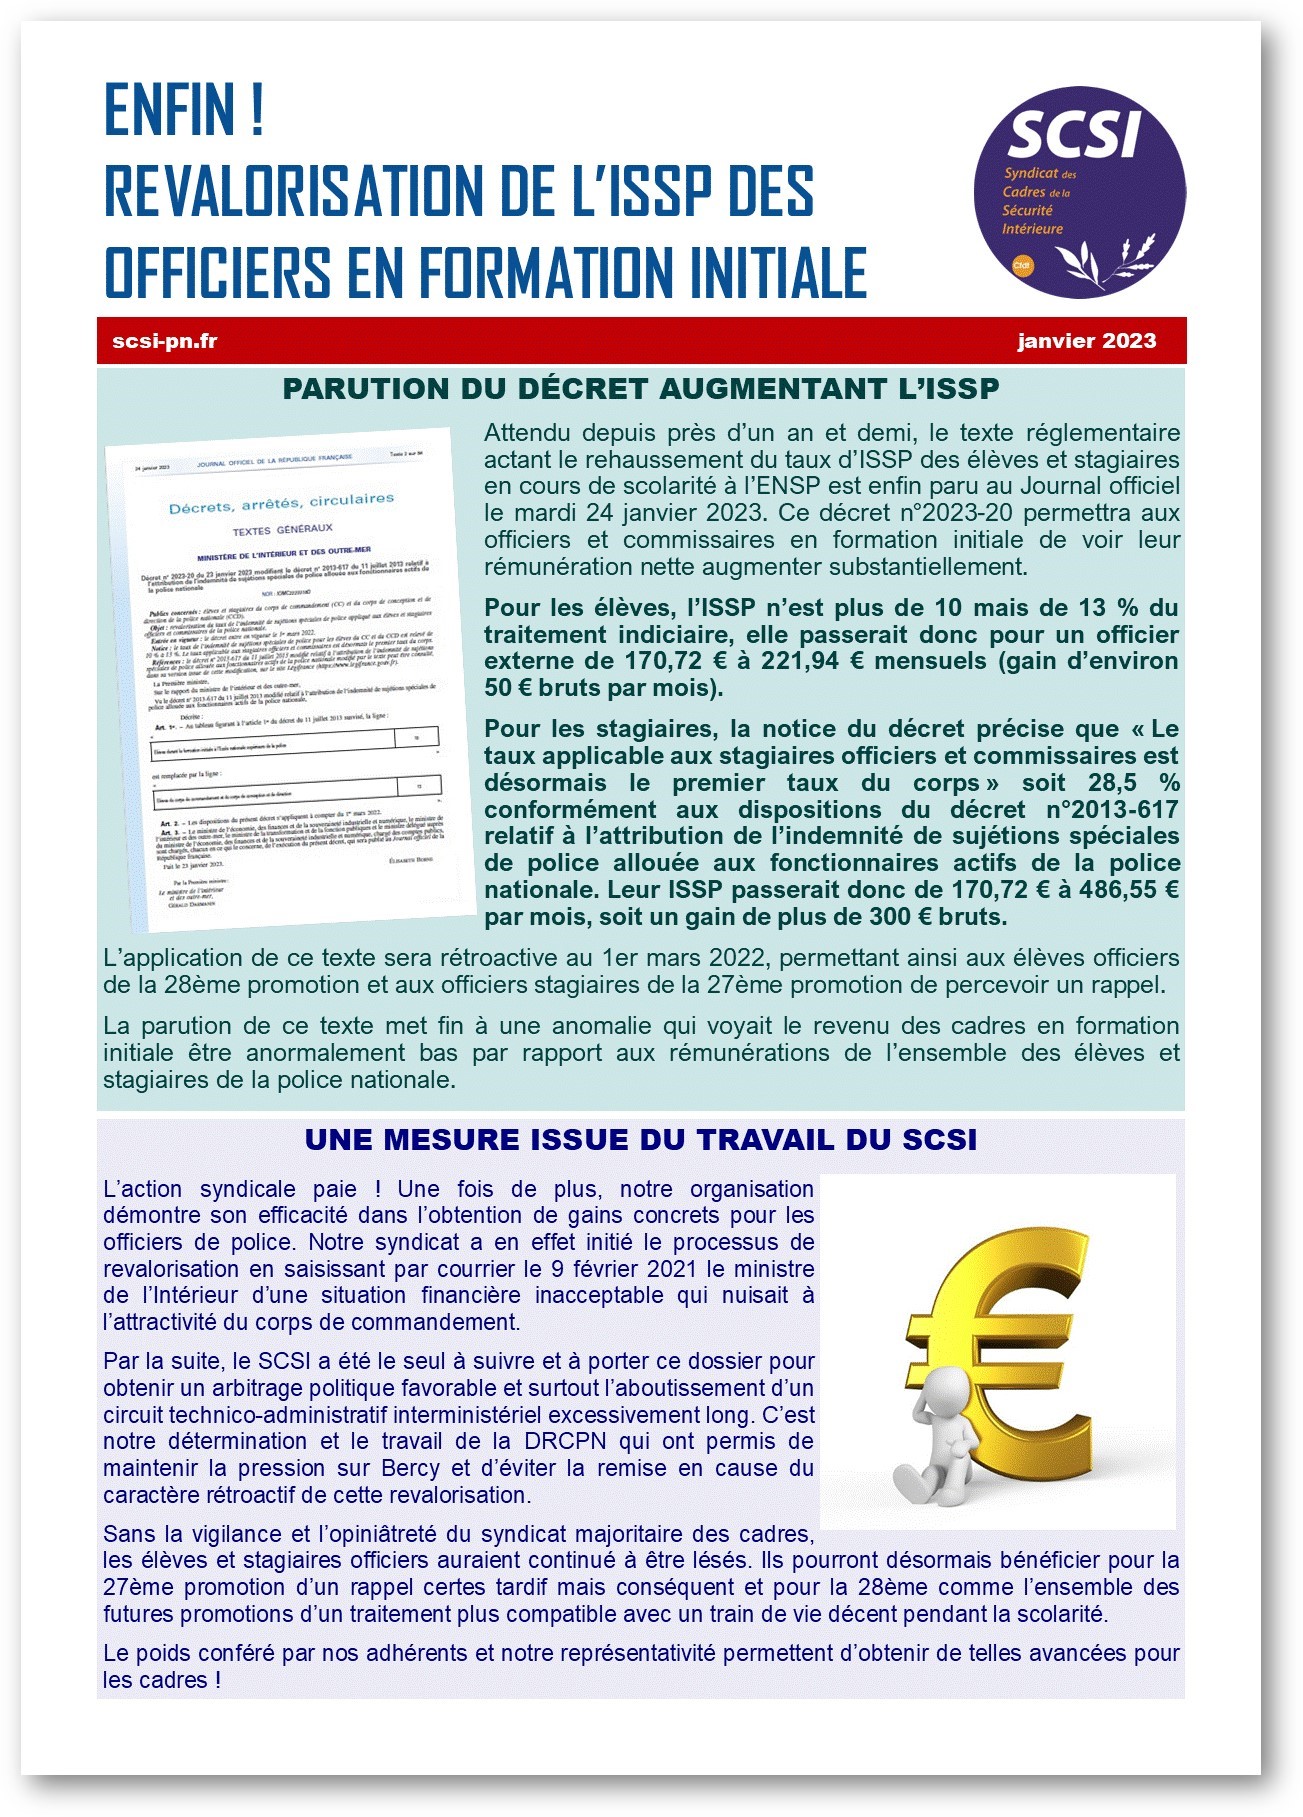 ENFIN ! REVALORISATION DE L’ISSP DES OFFICIERS EN FORMATION INITIALE